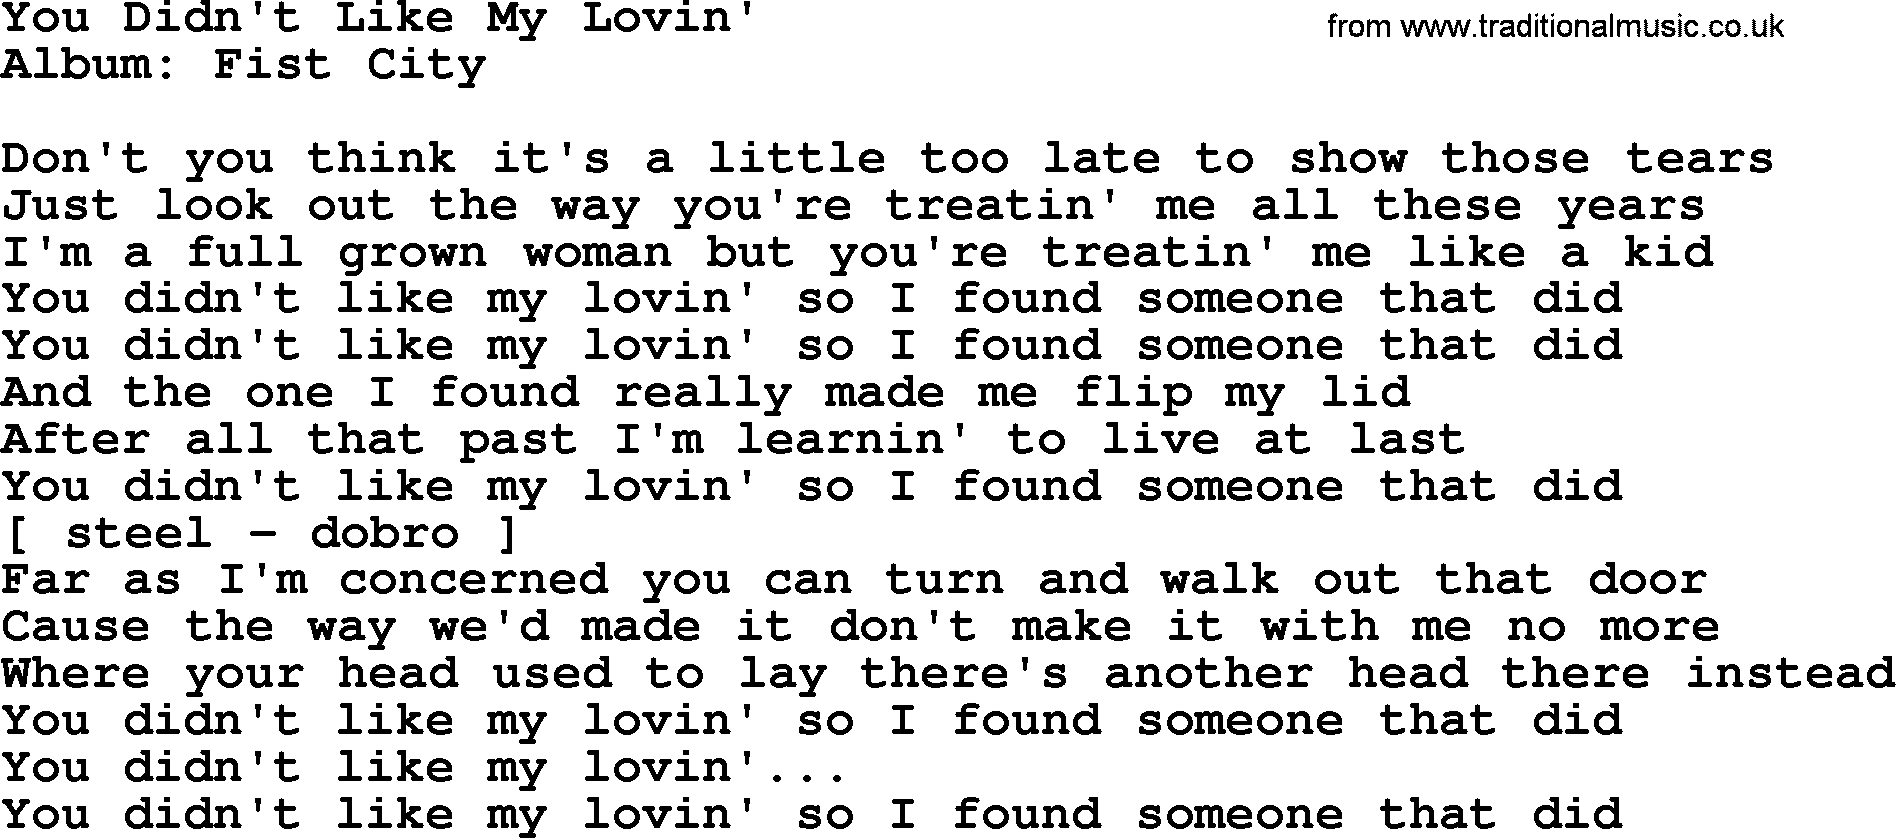 Loretta Lynn song: You Didn't Like My Lovin' lyrics